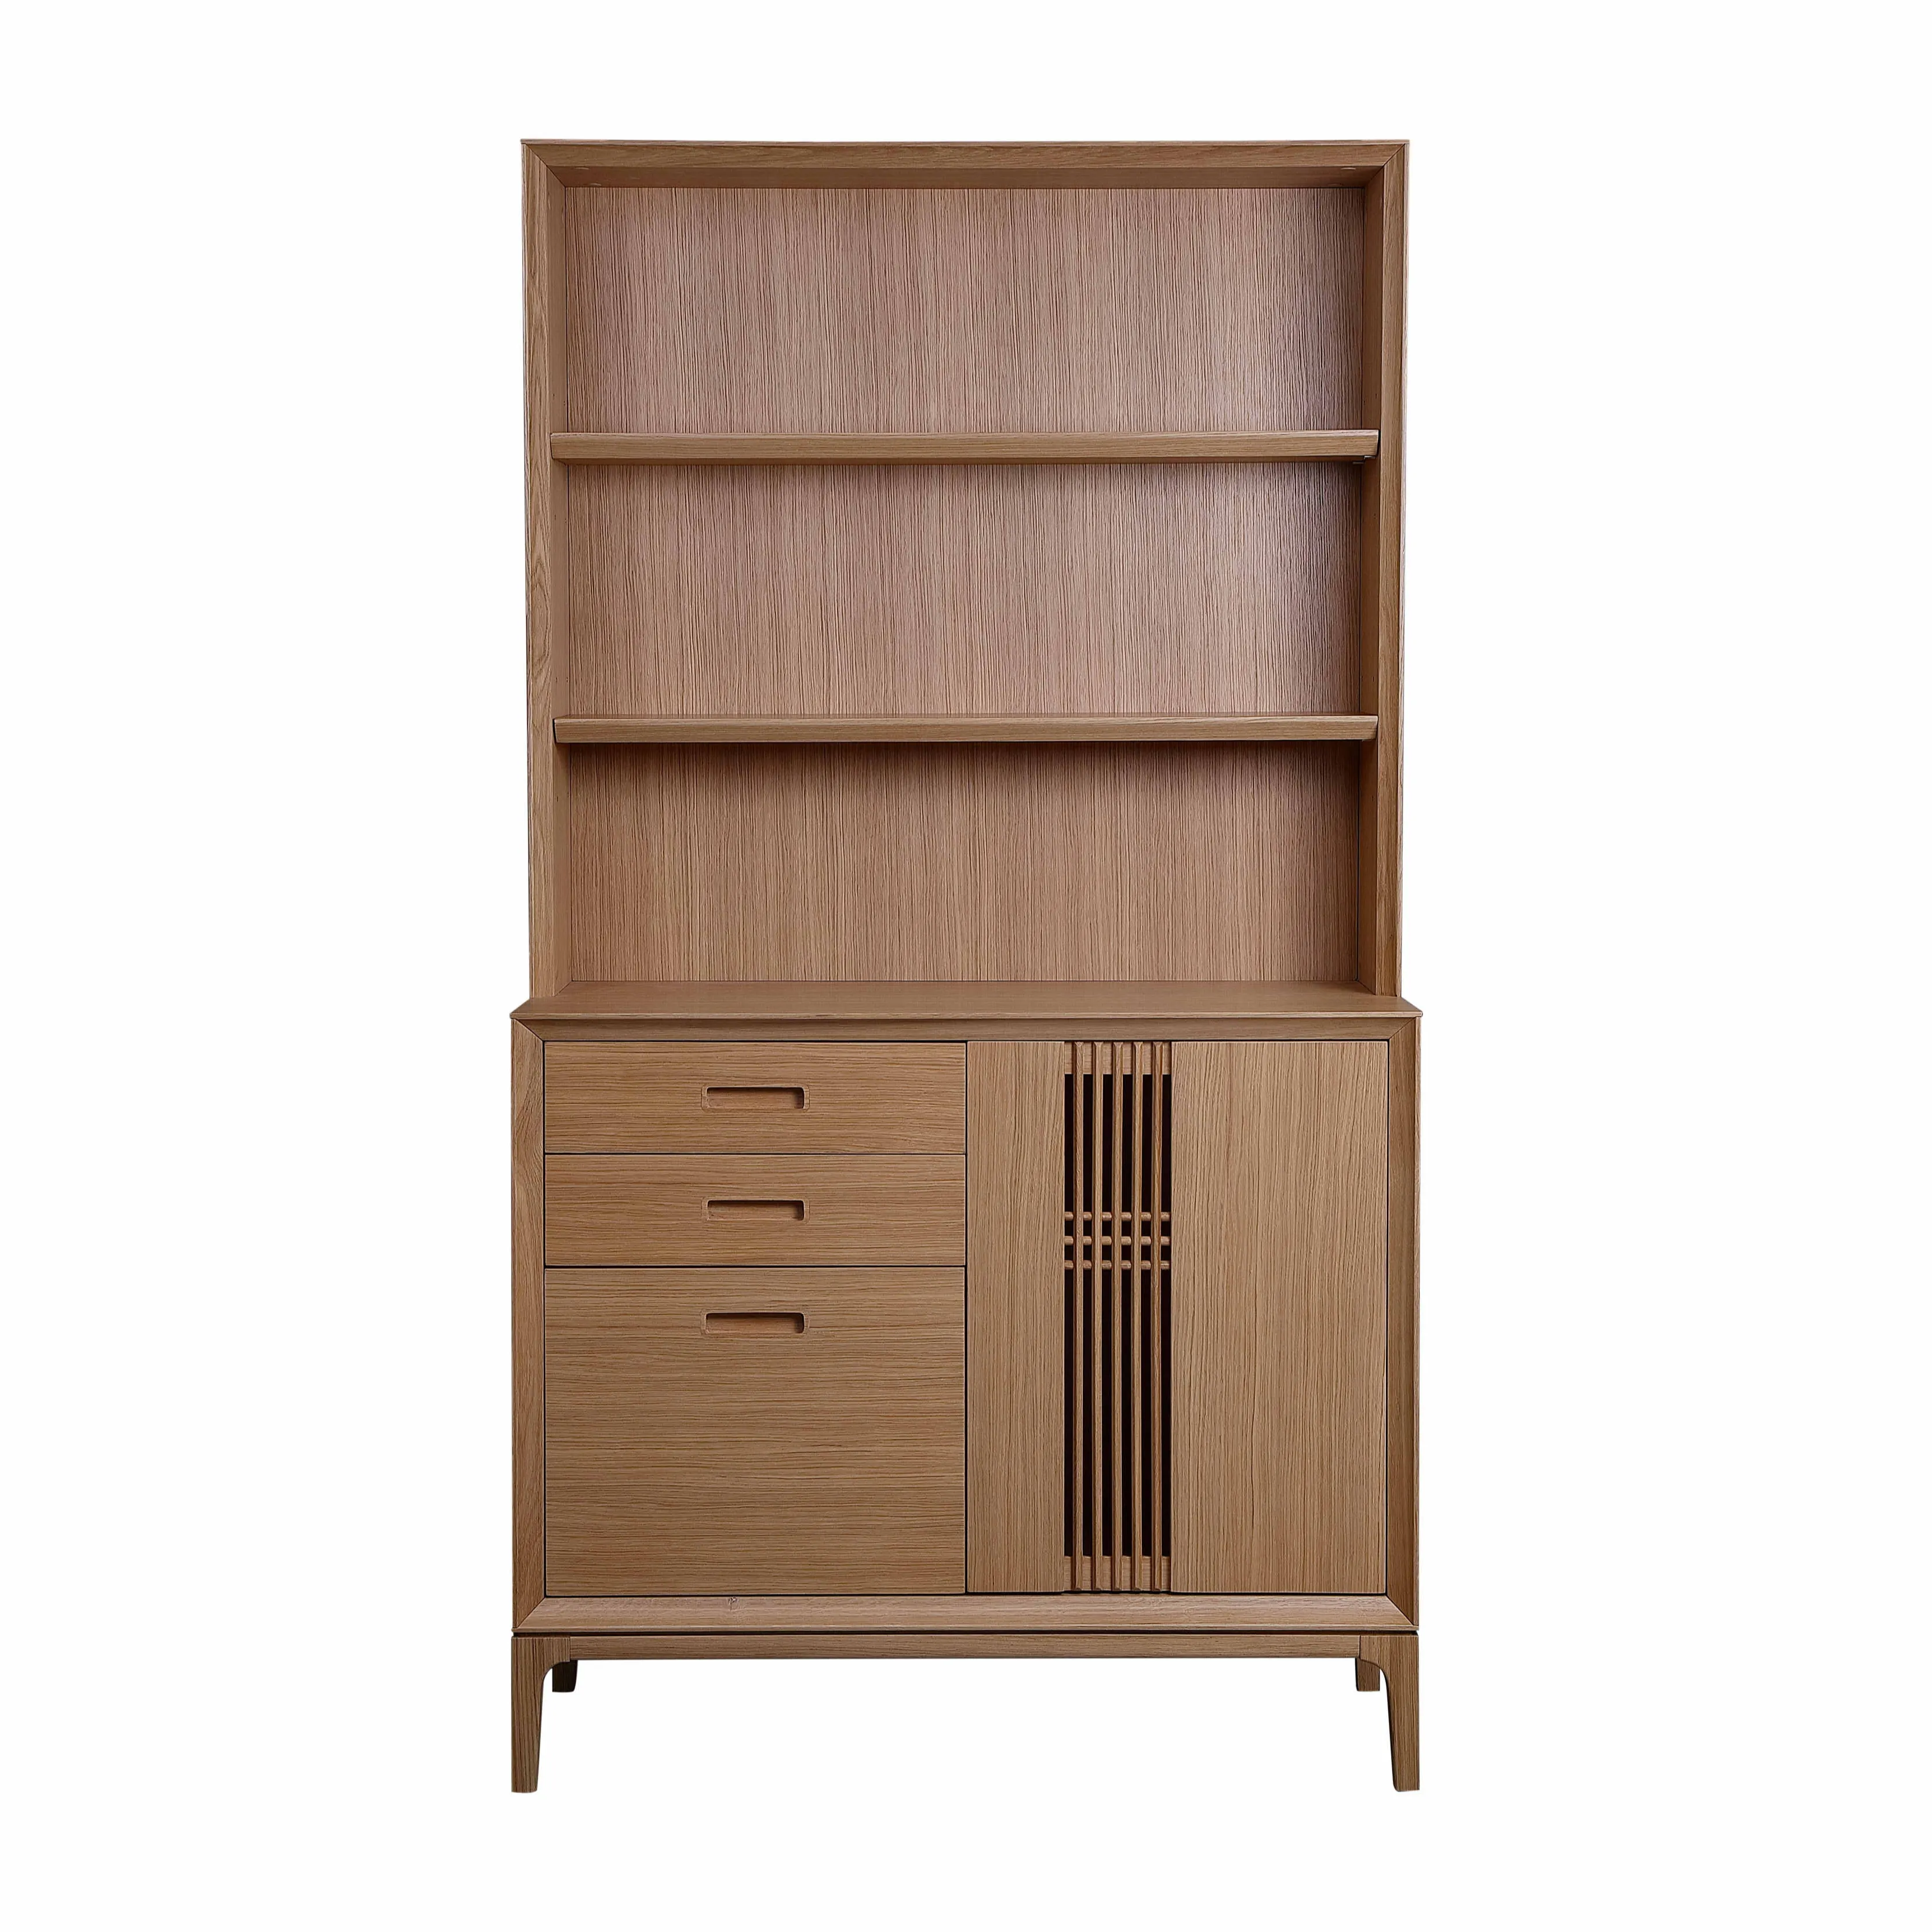 جديد الحديثة المنزل/مكتب أثاث غرفة تصميم رف خشبي للكتب خزانة